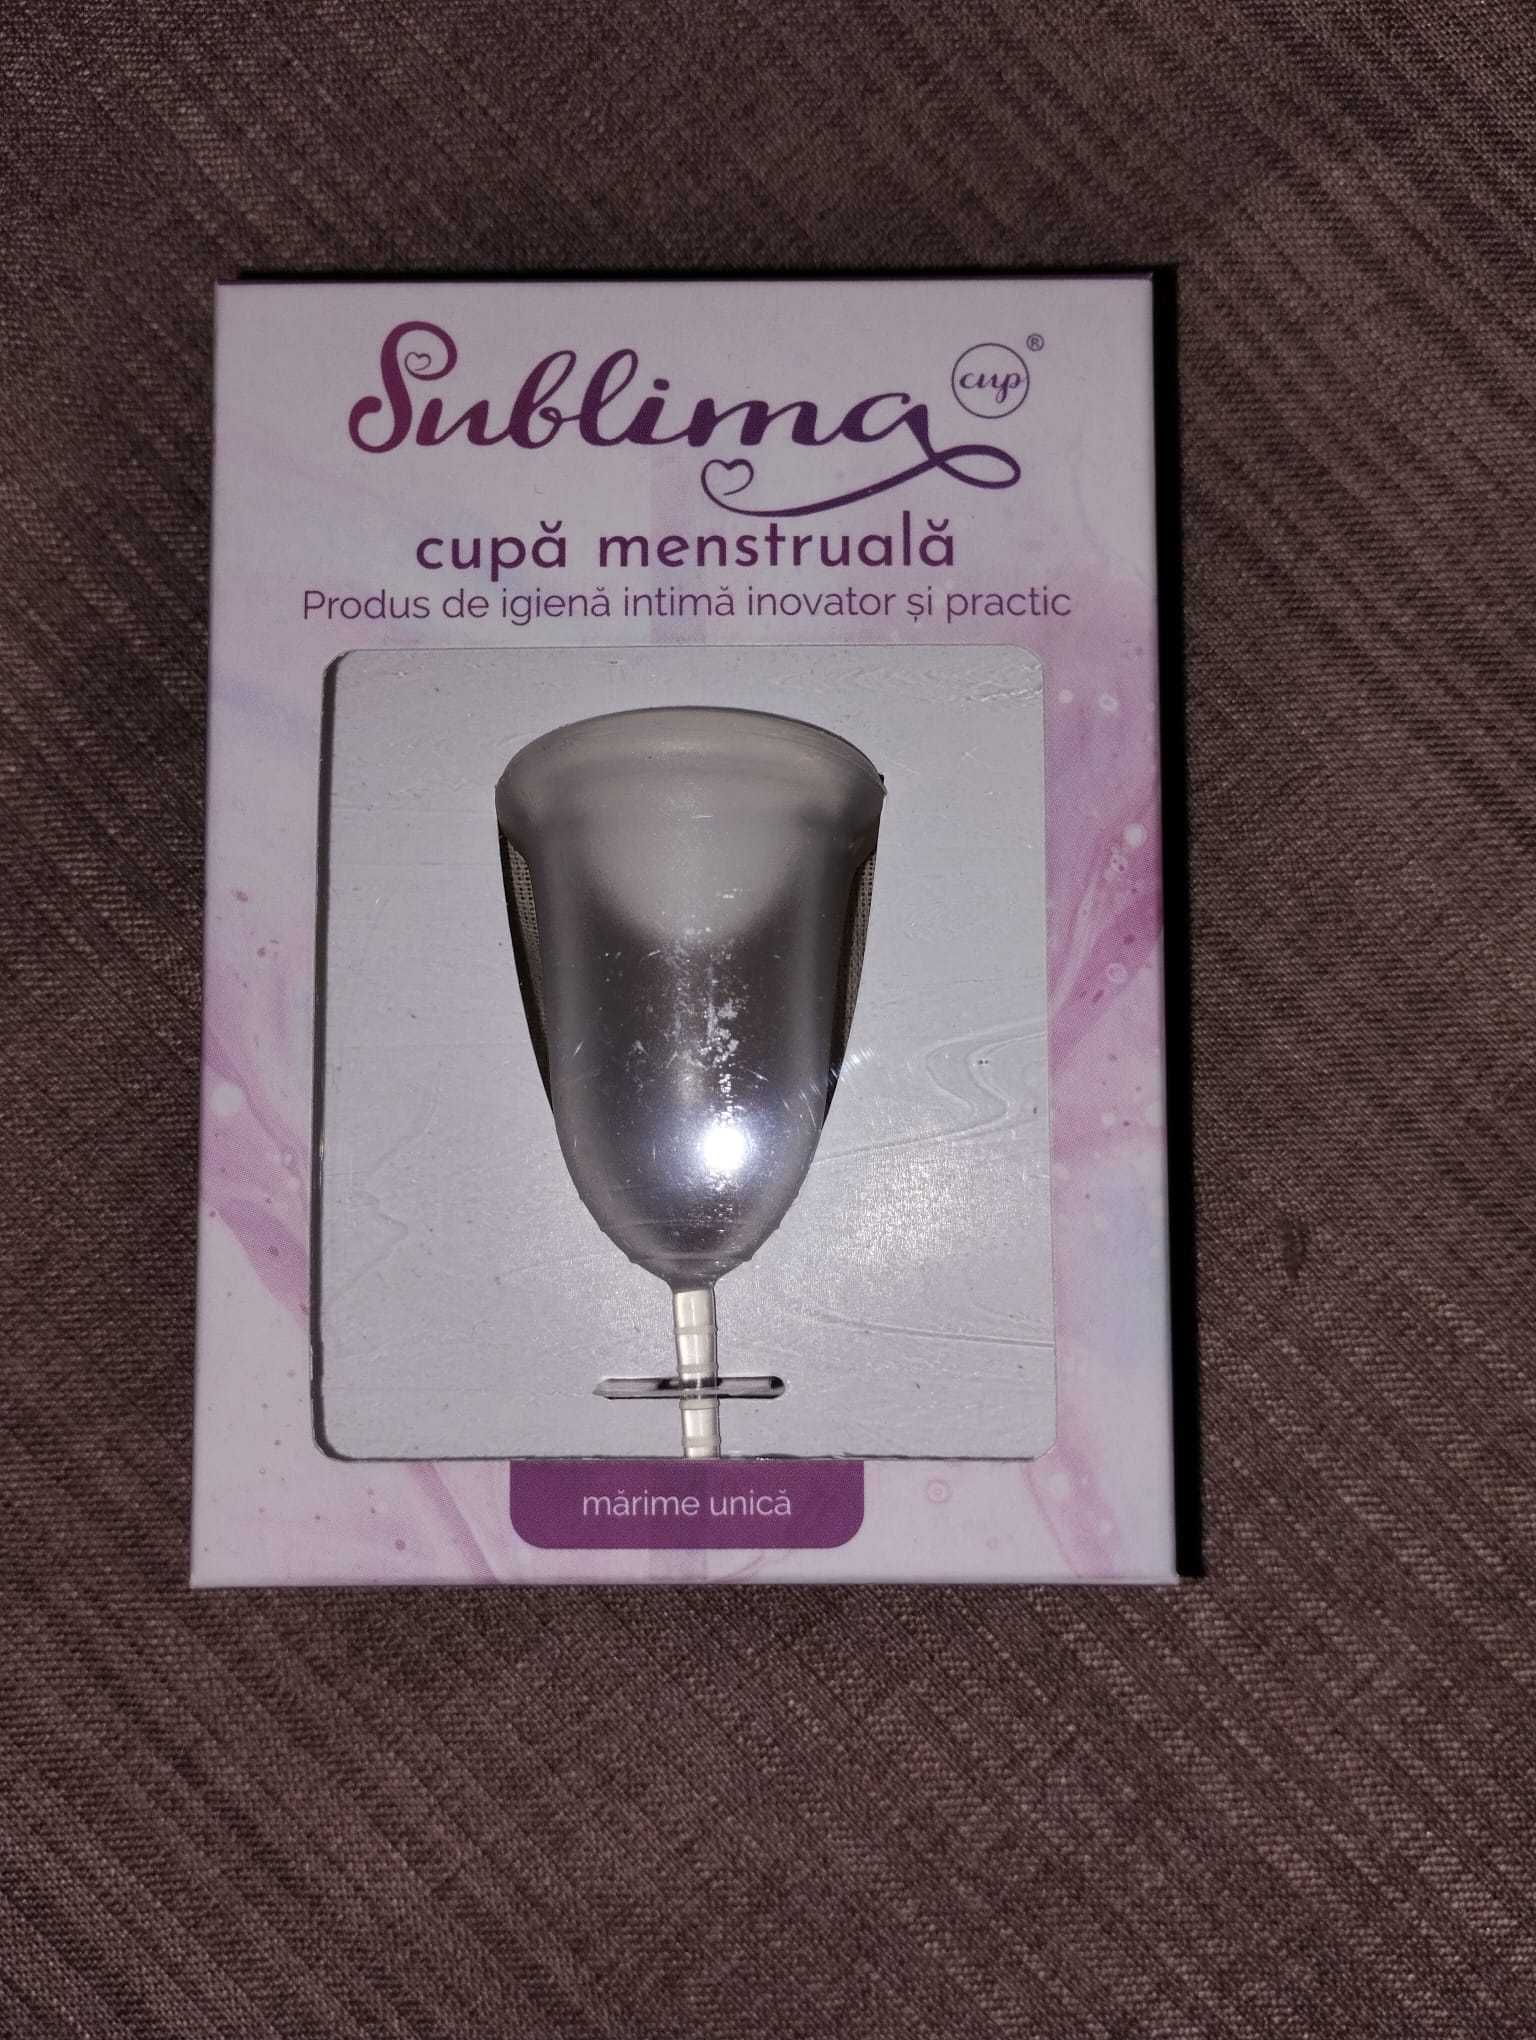 Cupa menstruala Sublima cup